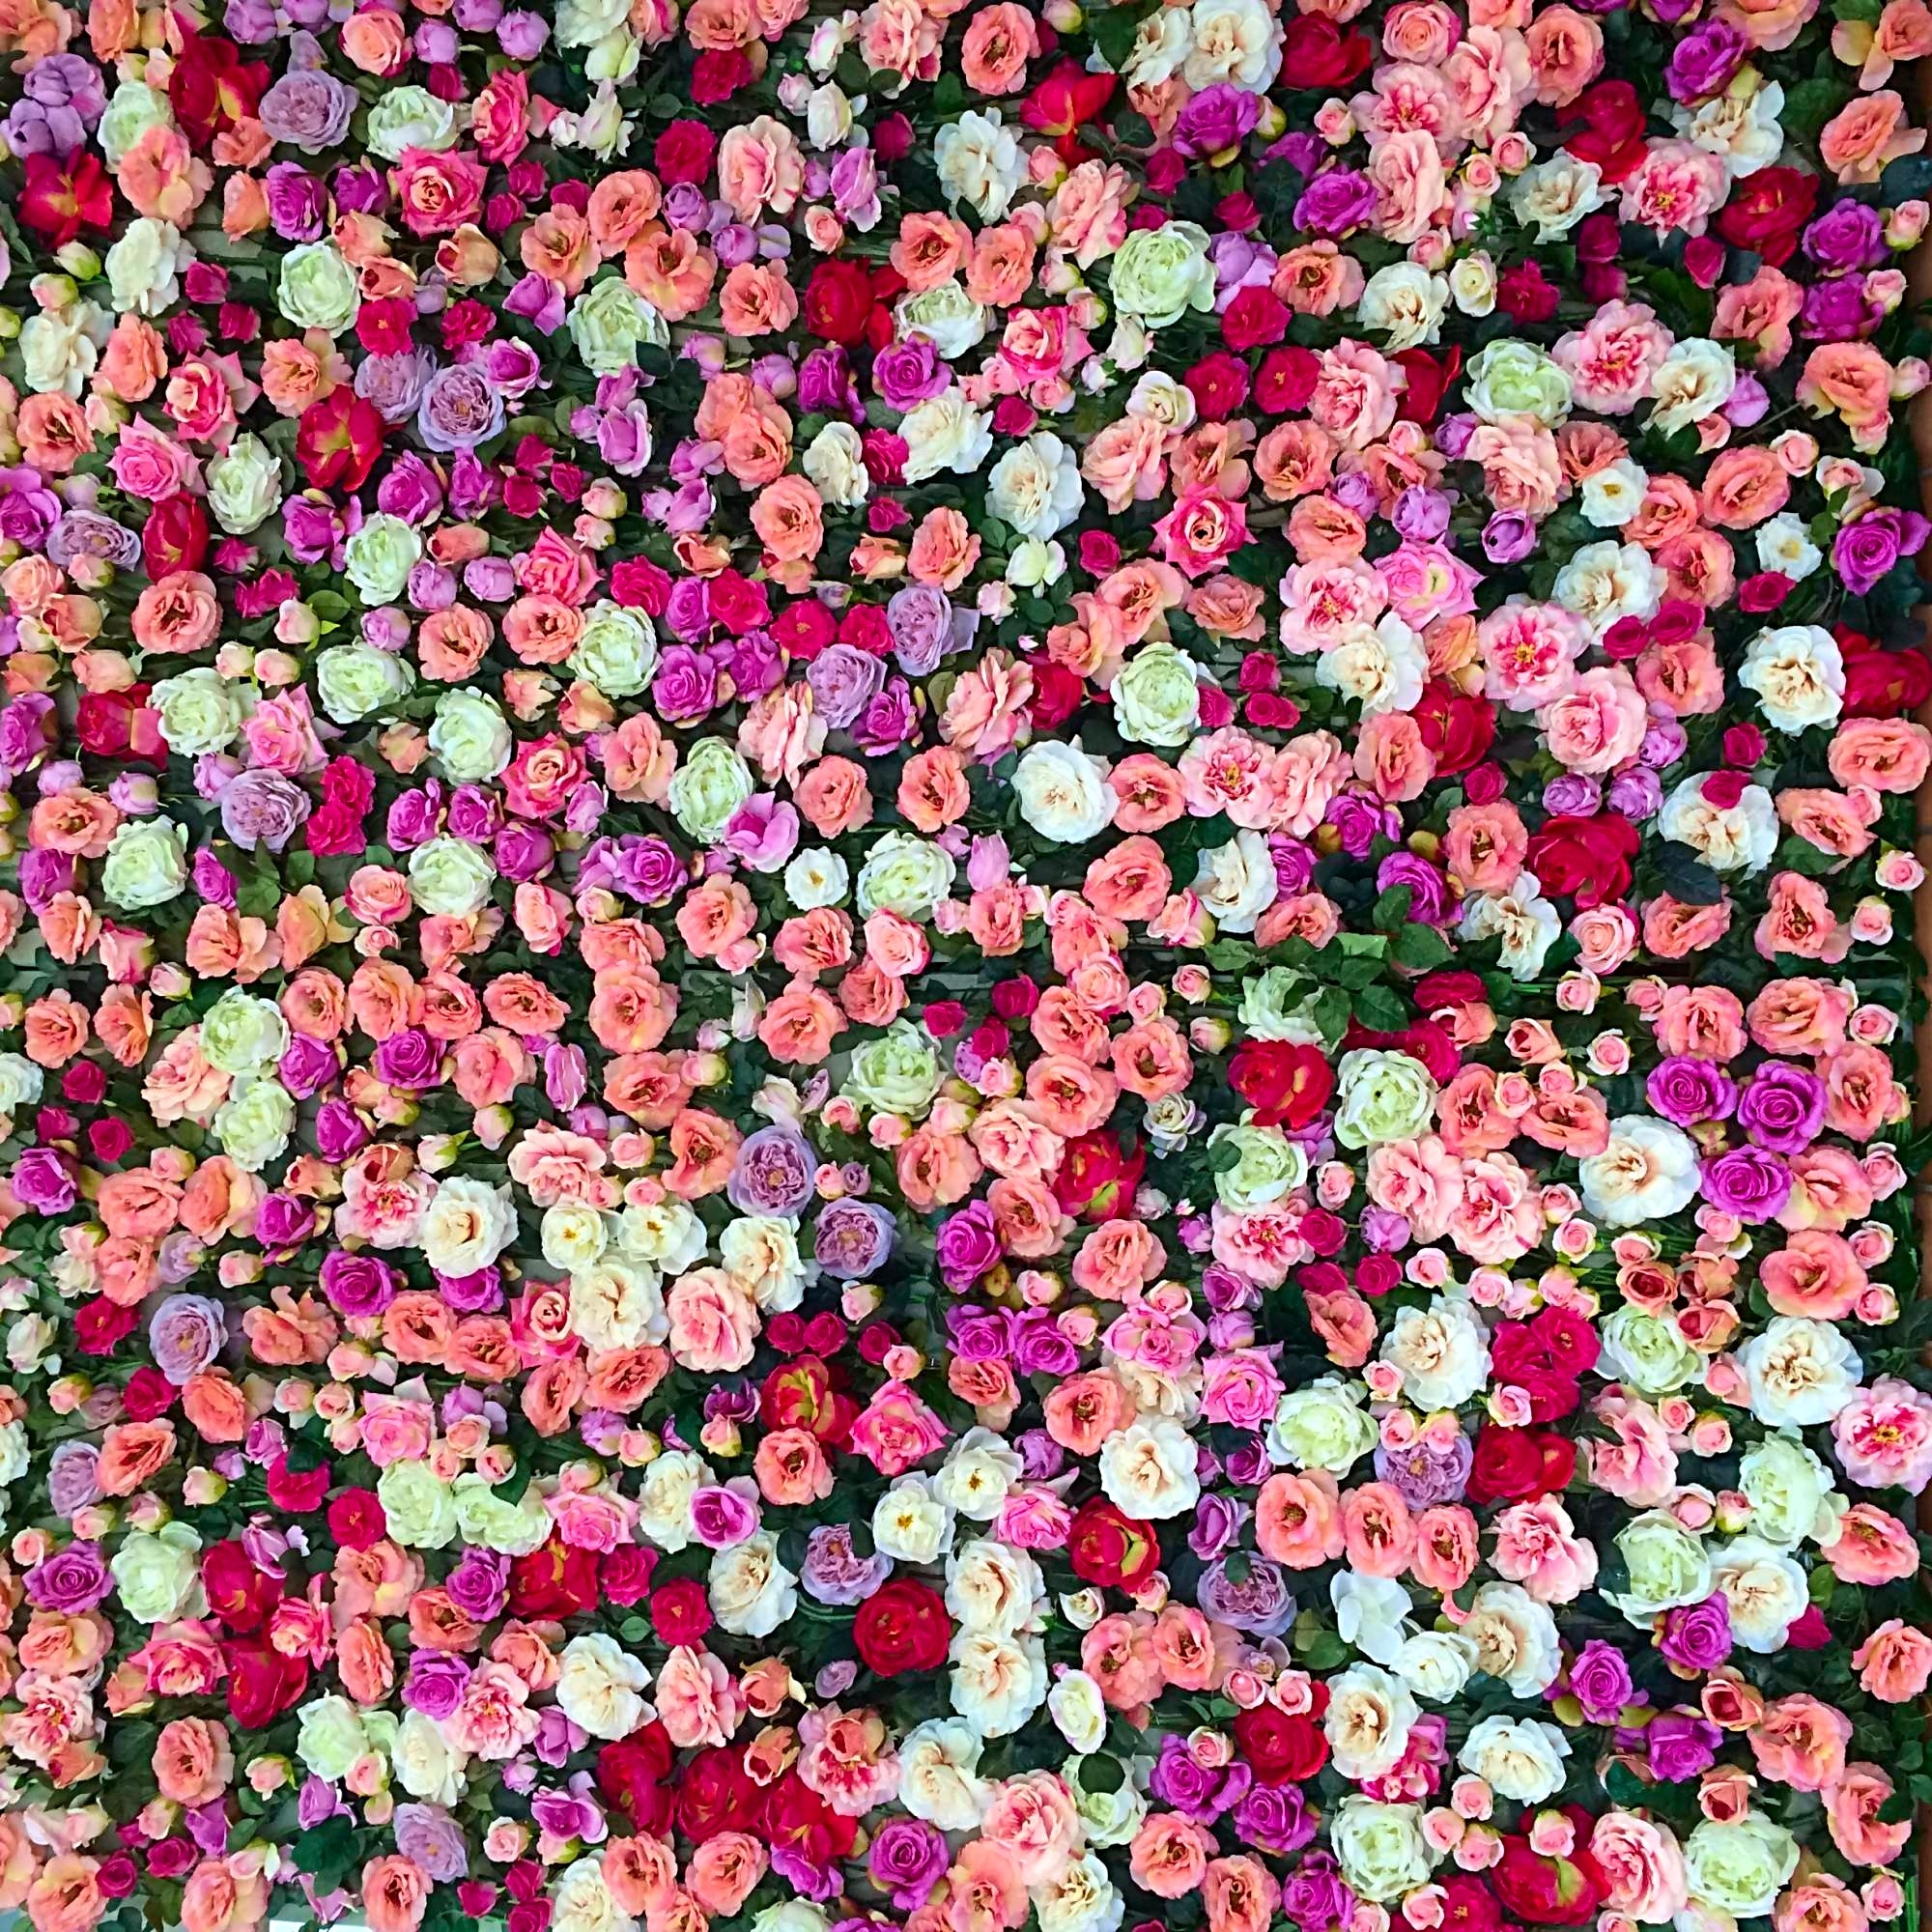 700 roses sont nécessaires pour réaliser ce mur de fleurs de 2.40 m x 2.40 m.